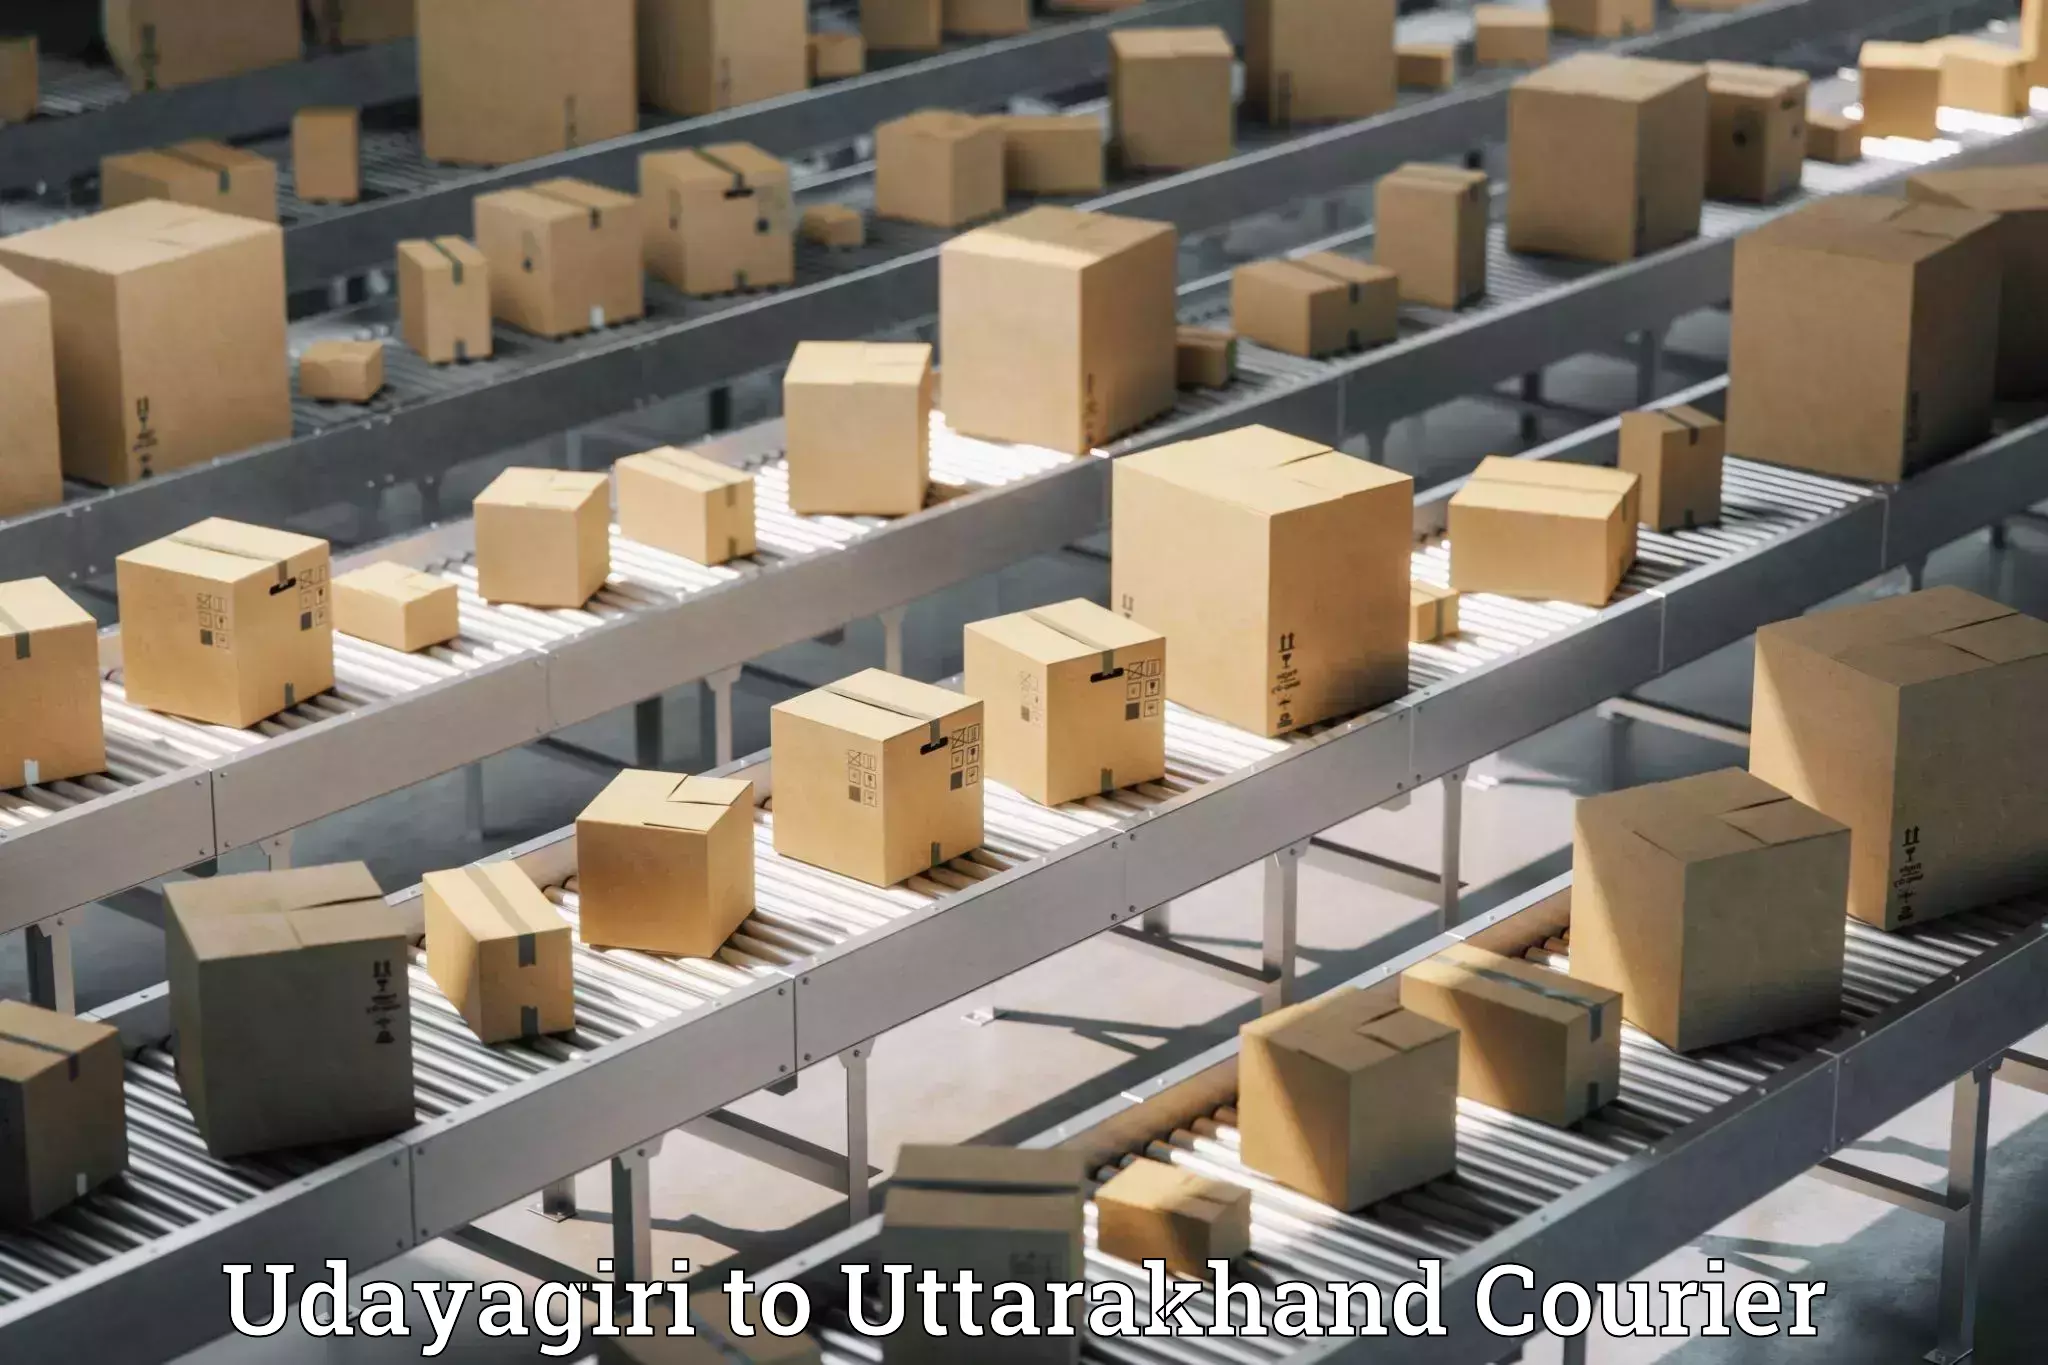 Luggage shipment tracking Udayagiri to Uttarakhand